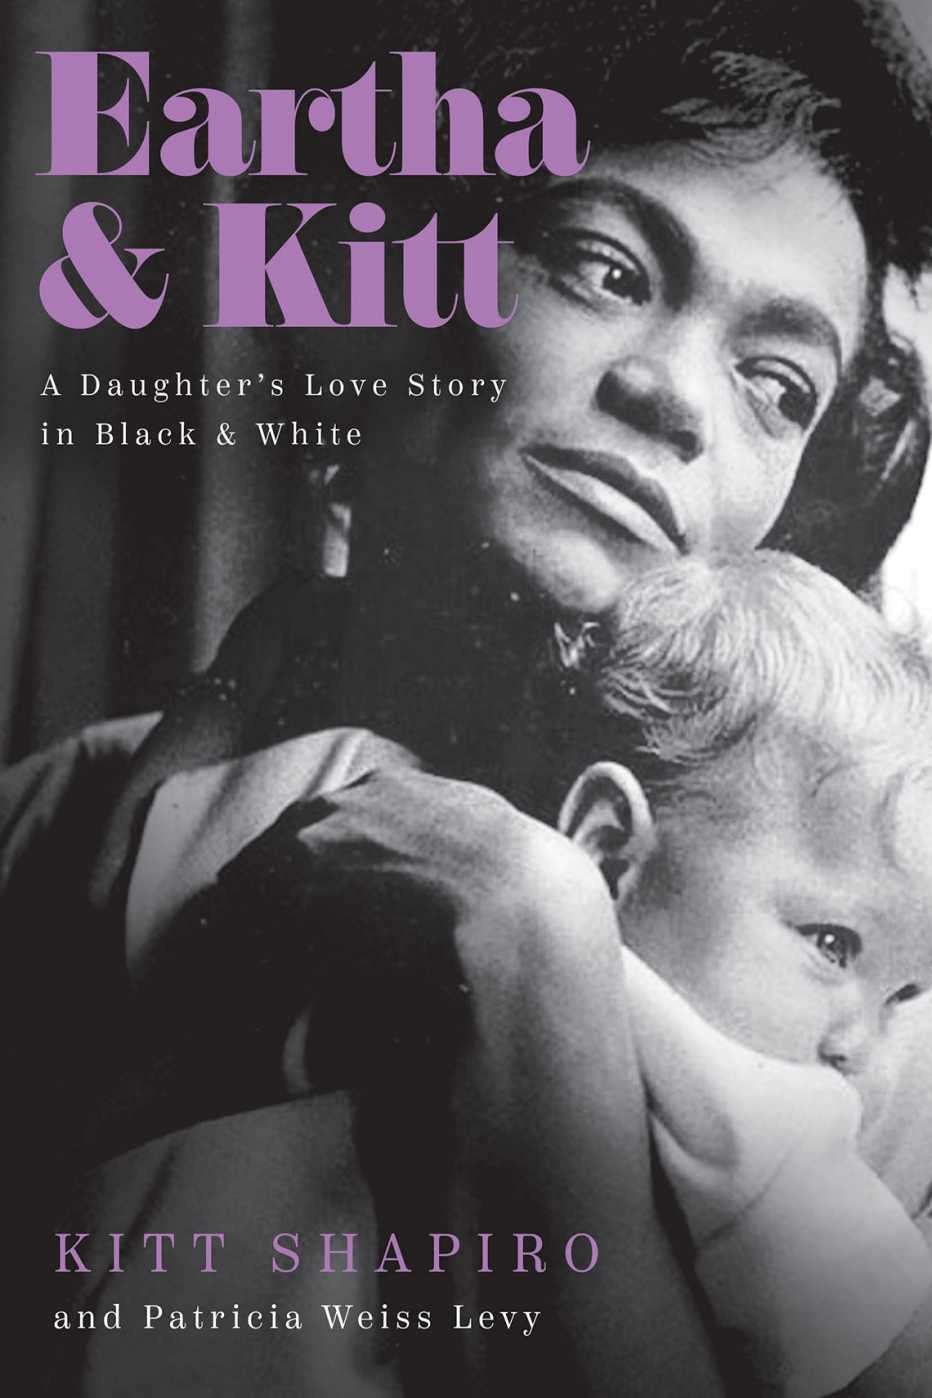 The book cover for Kitt Shapiro's memoir Eartha and Kitt A Daughter's Love Story in Black and White